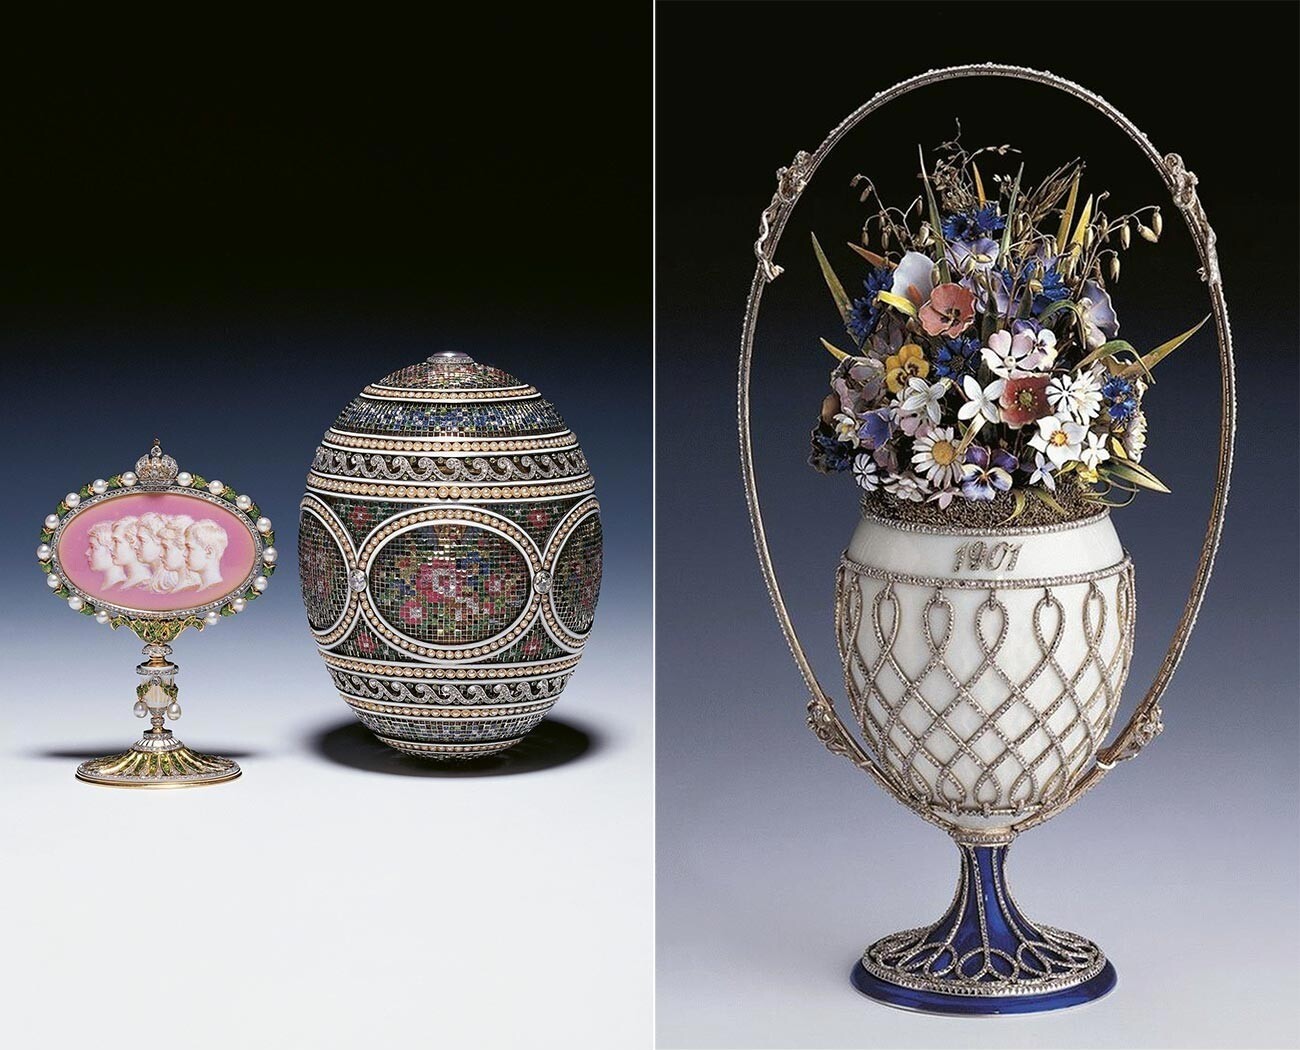 Uova di Pasqua Faberge “Mosaico” e “Cesto di fiori di campo”, vendute negli anni Trenta alla famiglia reale inglese
